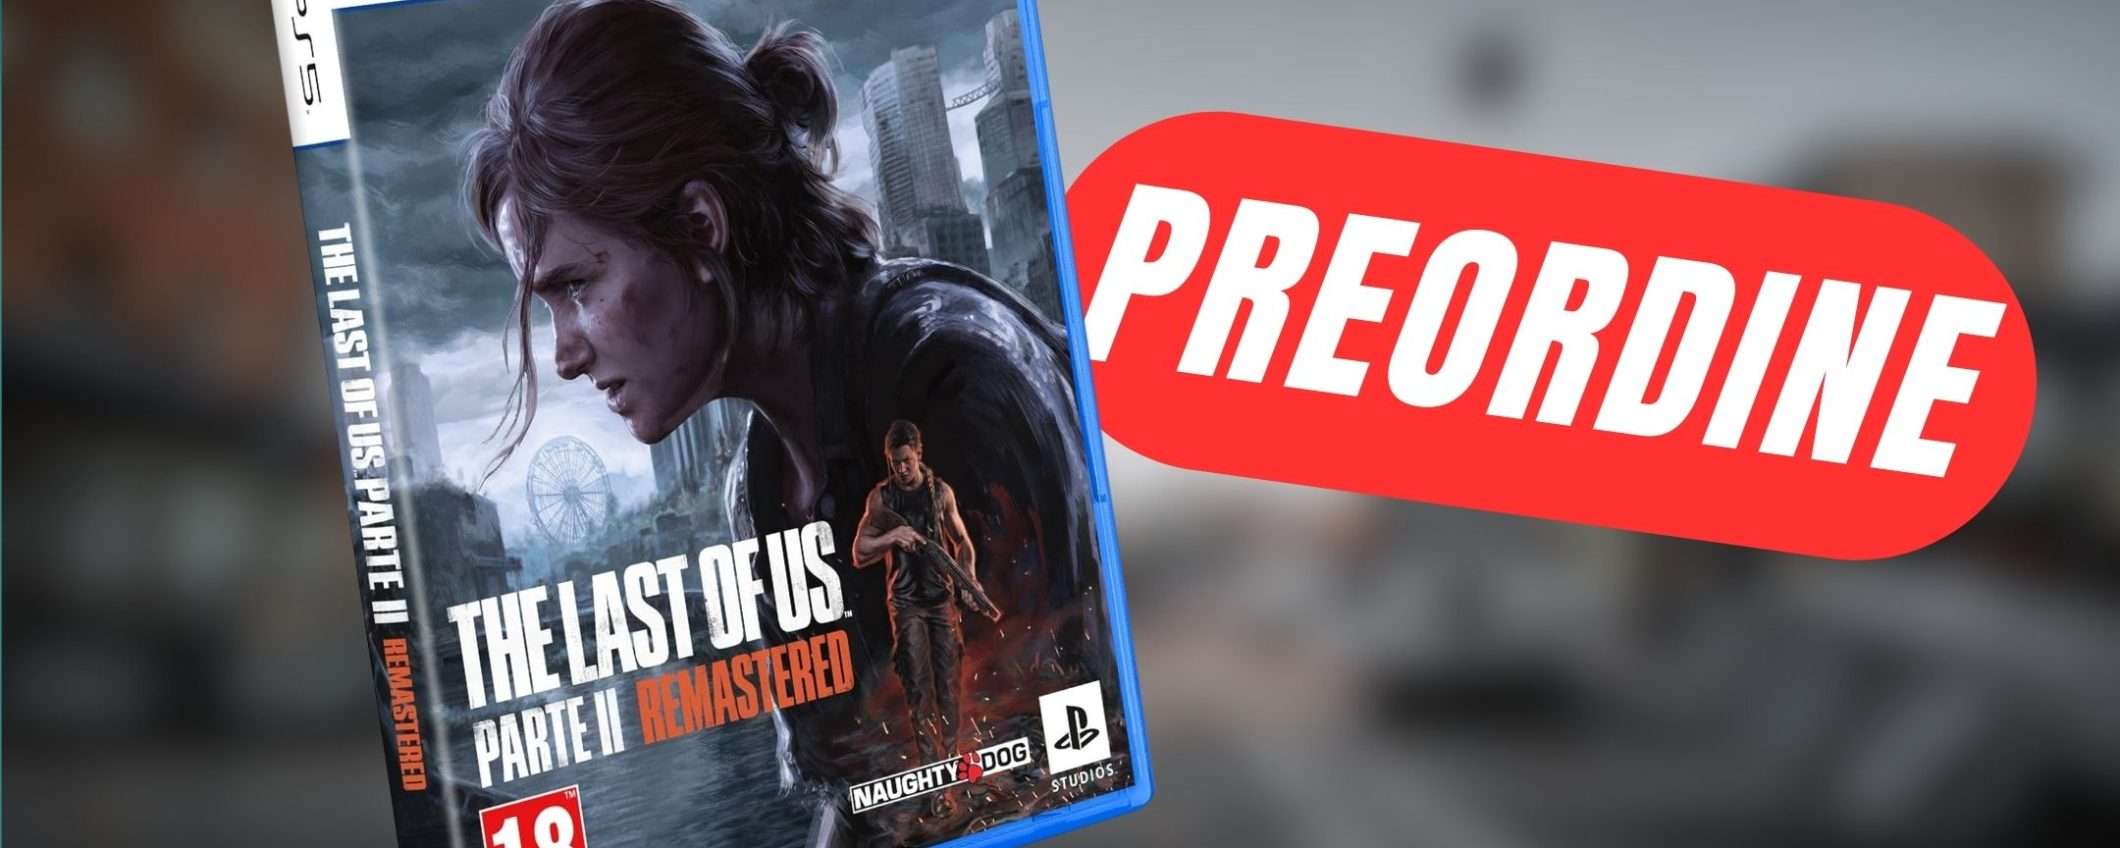 The Last of Us Parte II Remastered è già preordinabile su Amazon!